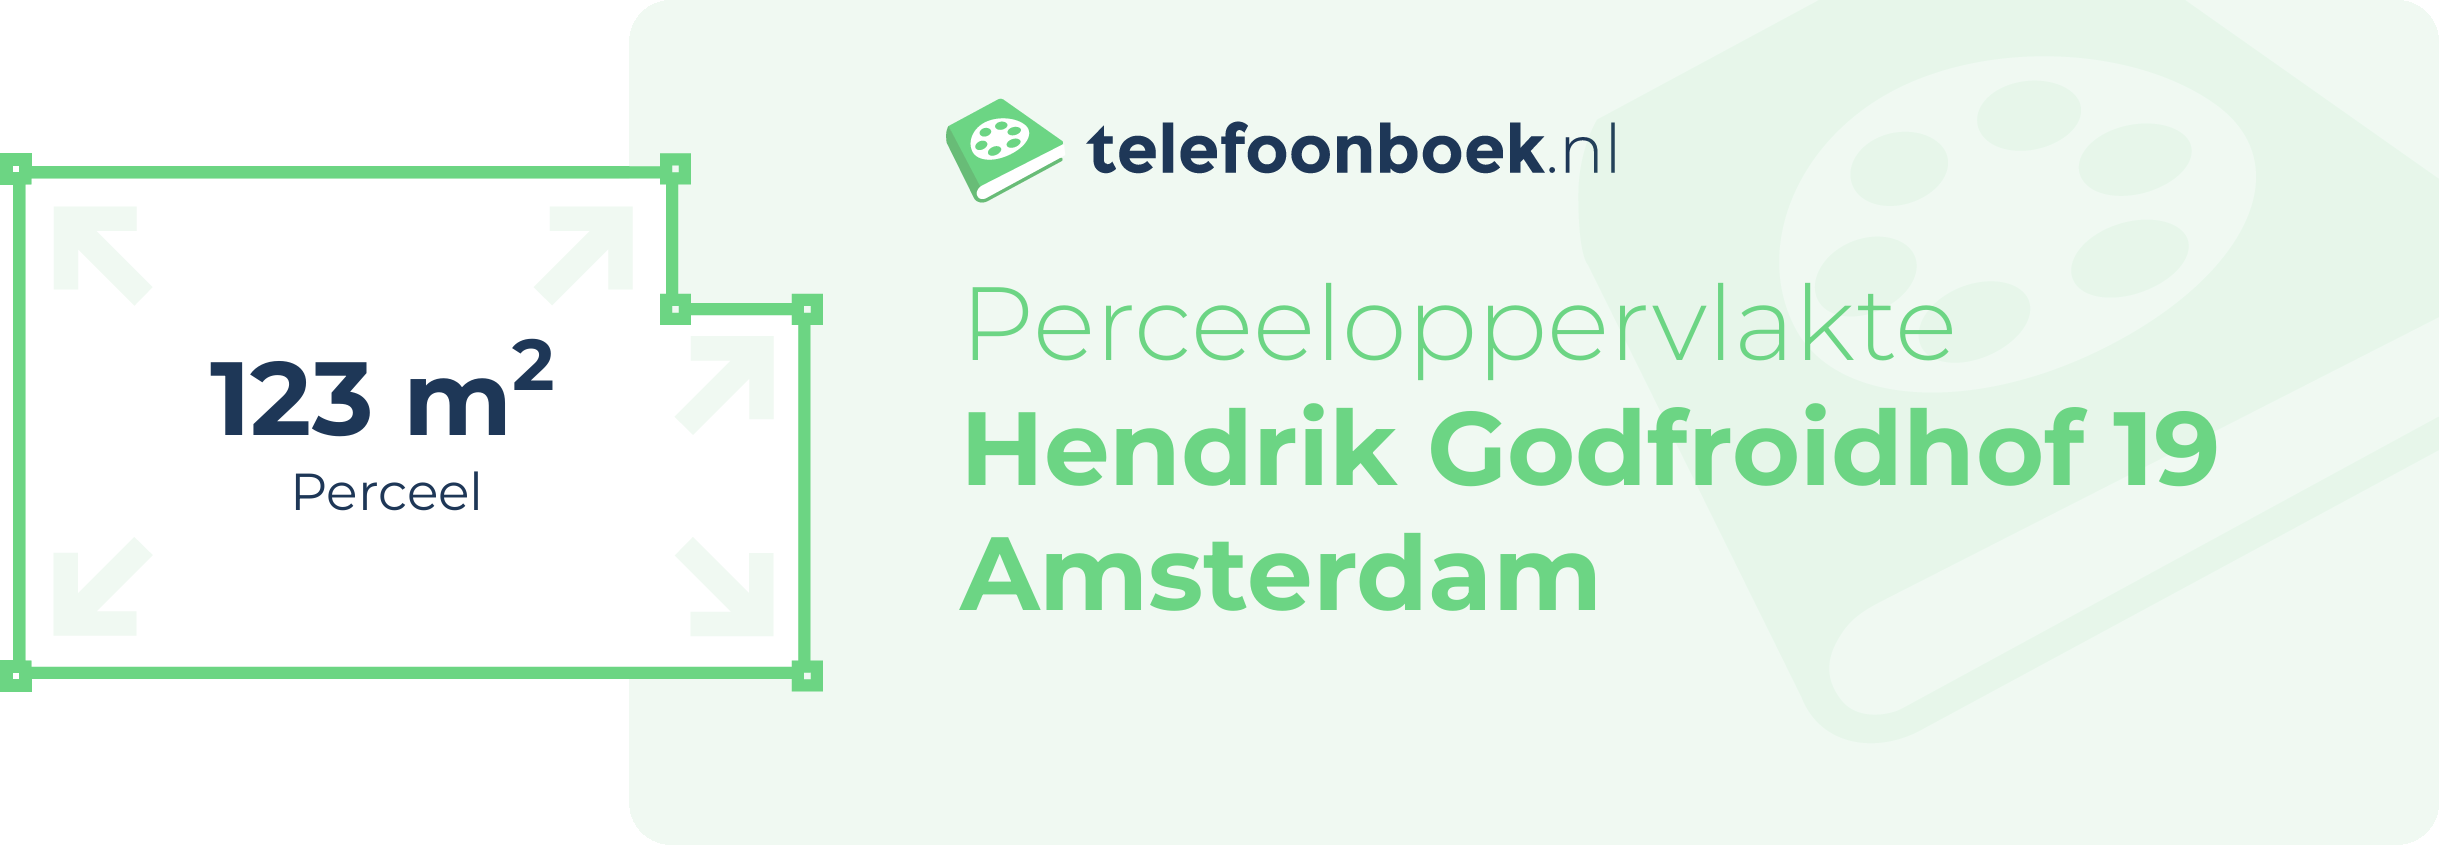 Perceeloppervlakte Hendrik Godfroidhof 19 Amsterdam